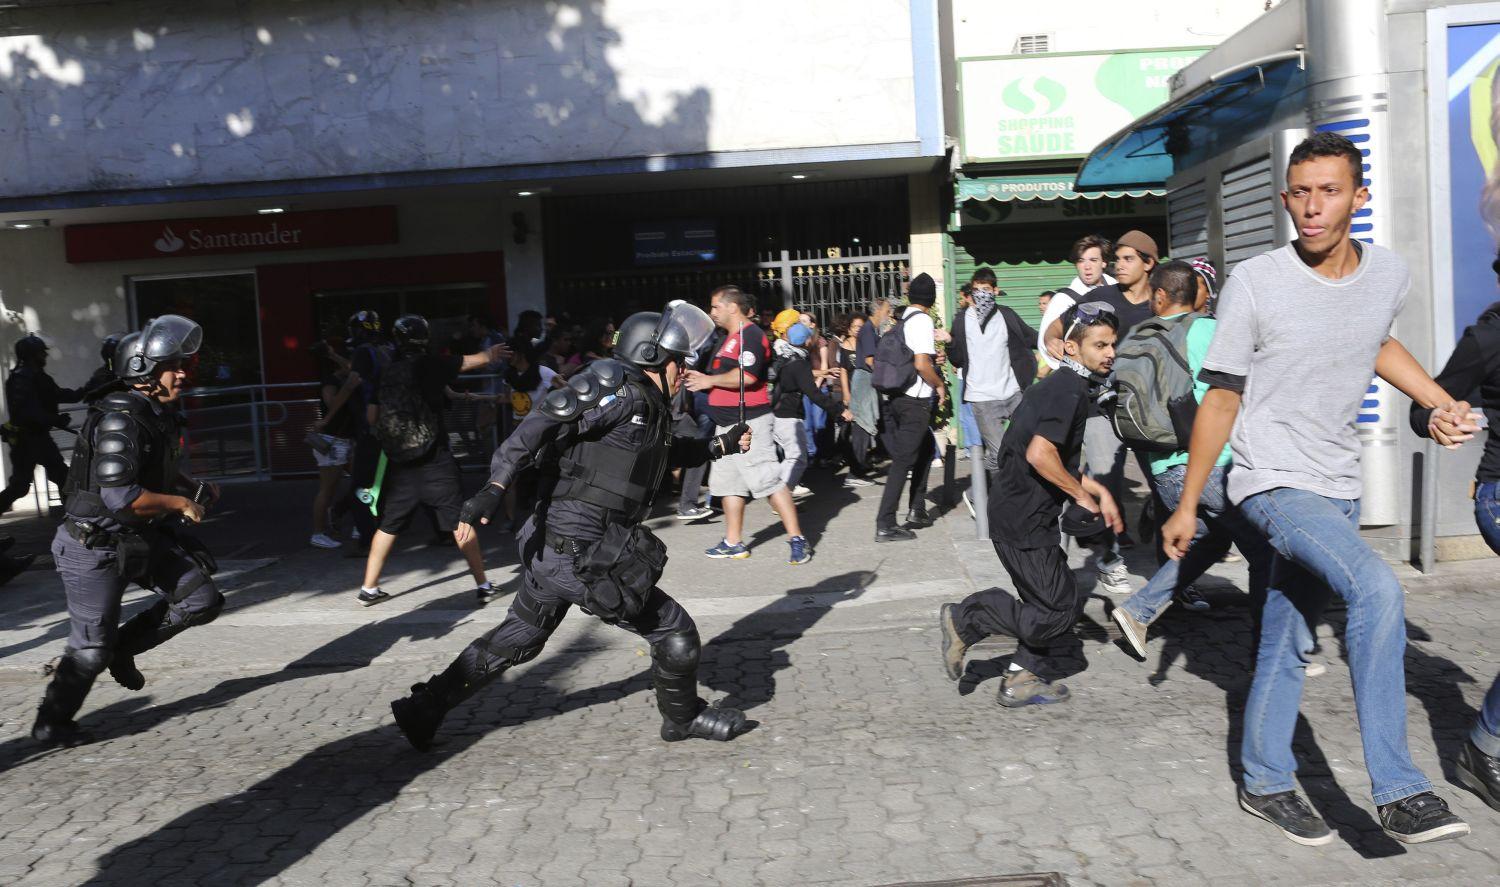 Rendőrök csaptak össze tüntetőkkel a foci vb döntő előtt Rio de Janeiroban 2014 júliusában